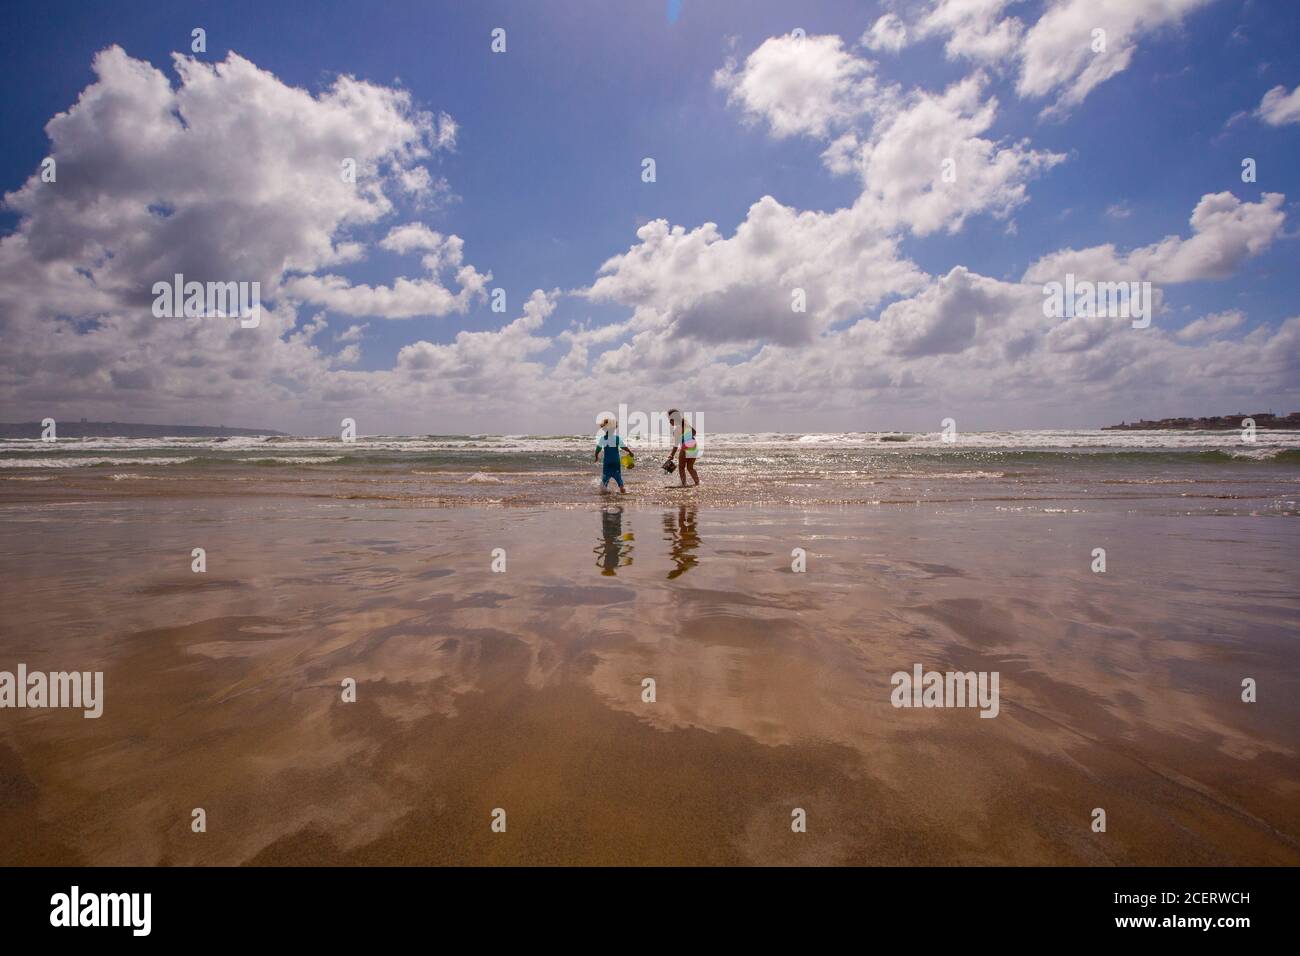 Los niños excitados exploran el banco de arena revelado por la marea baja En el Mar Mediterráneo Modelo de lanzamiento disponible Foto de stock